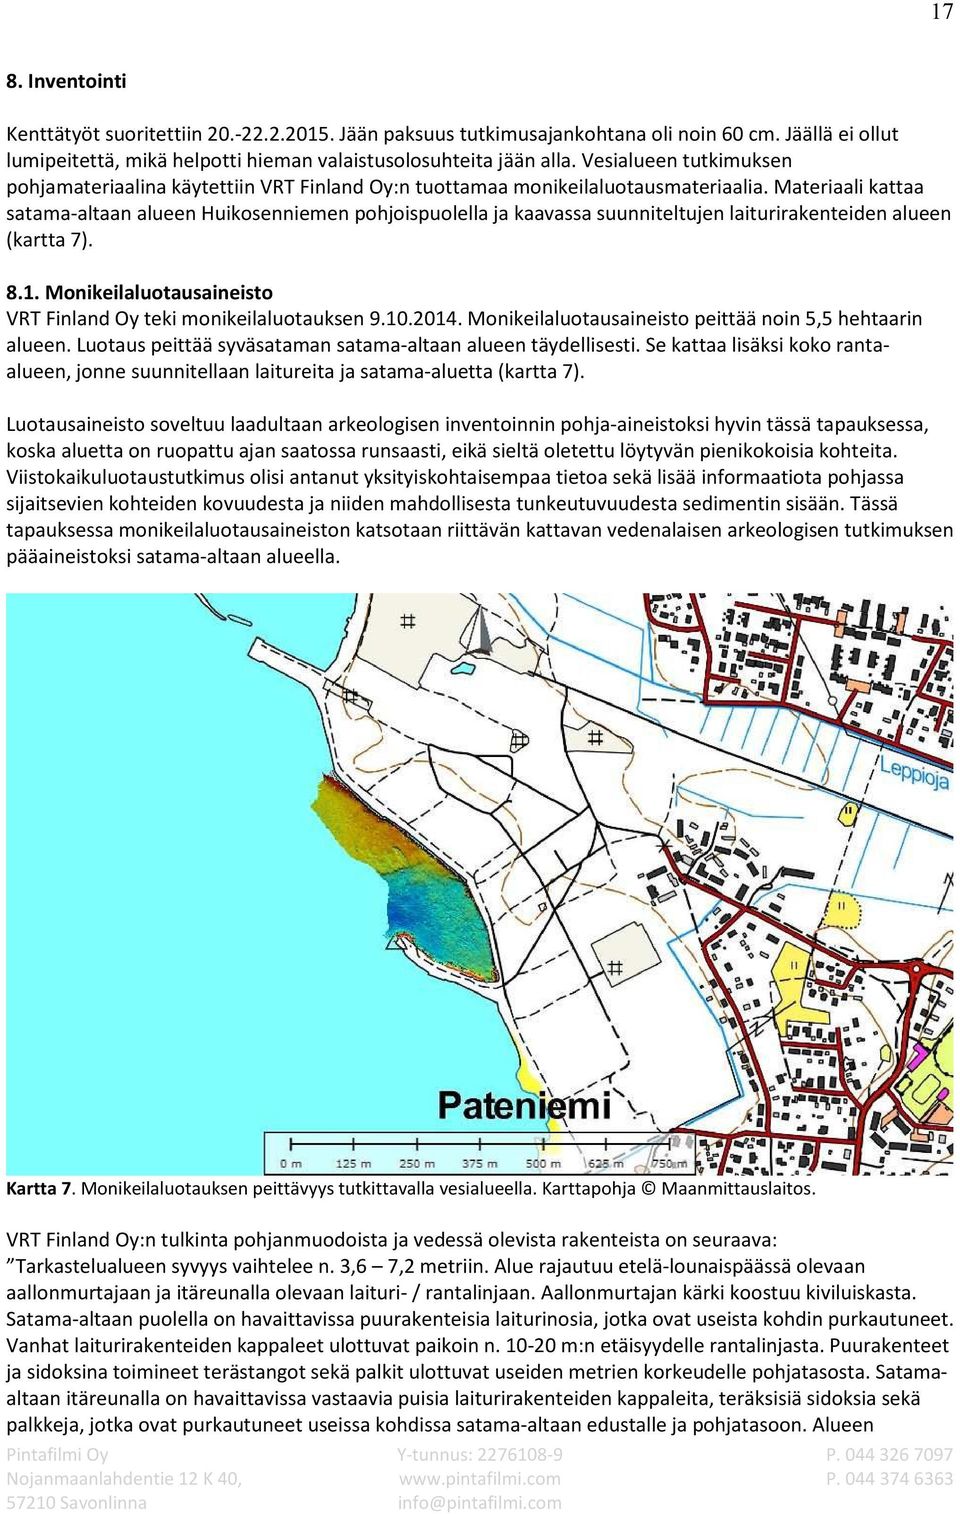 Materiaali kattaa satama-altaan alueen Huikosenniemen pohjoispuolella ja kaavassa suunniteltujen laiturirakenteiden alueen (kartta 7). 8.1.